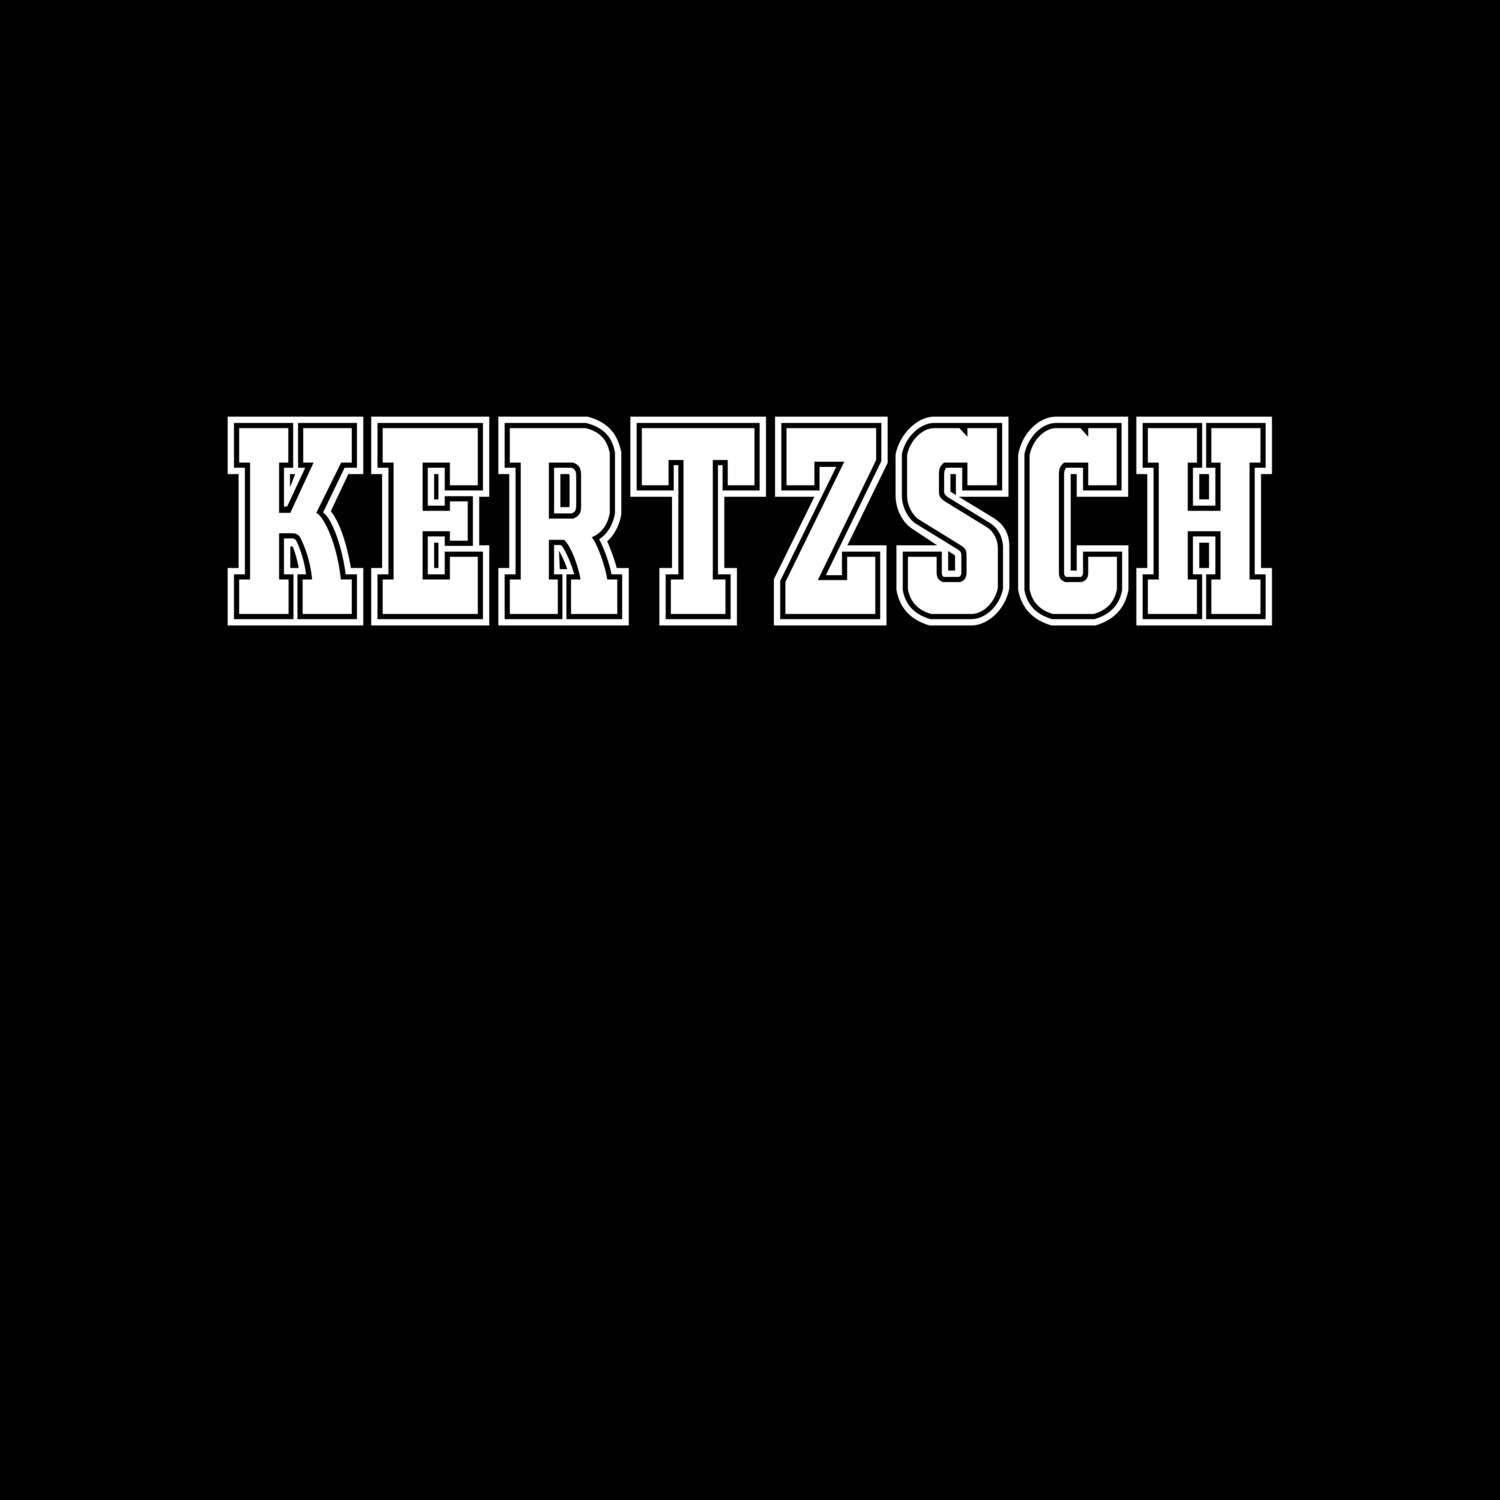 Kertzsch T-Shirt »Classic«